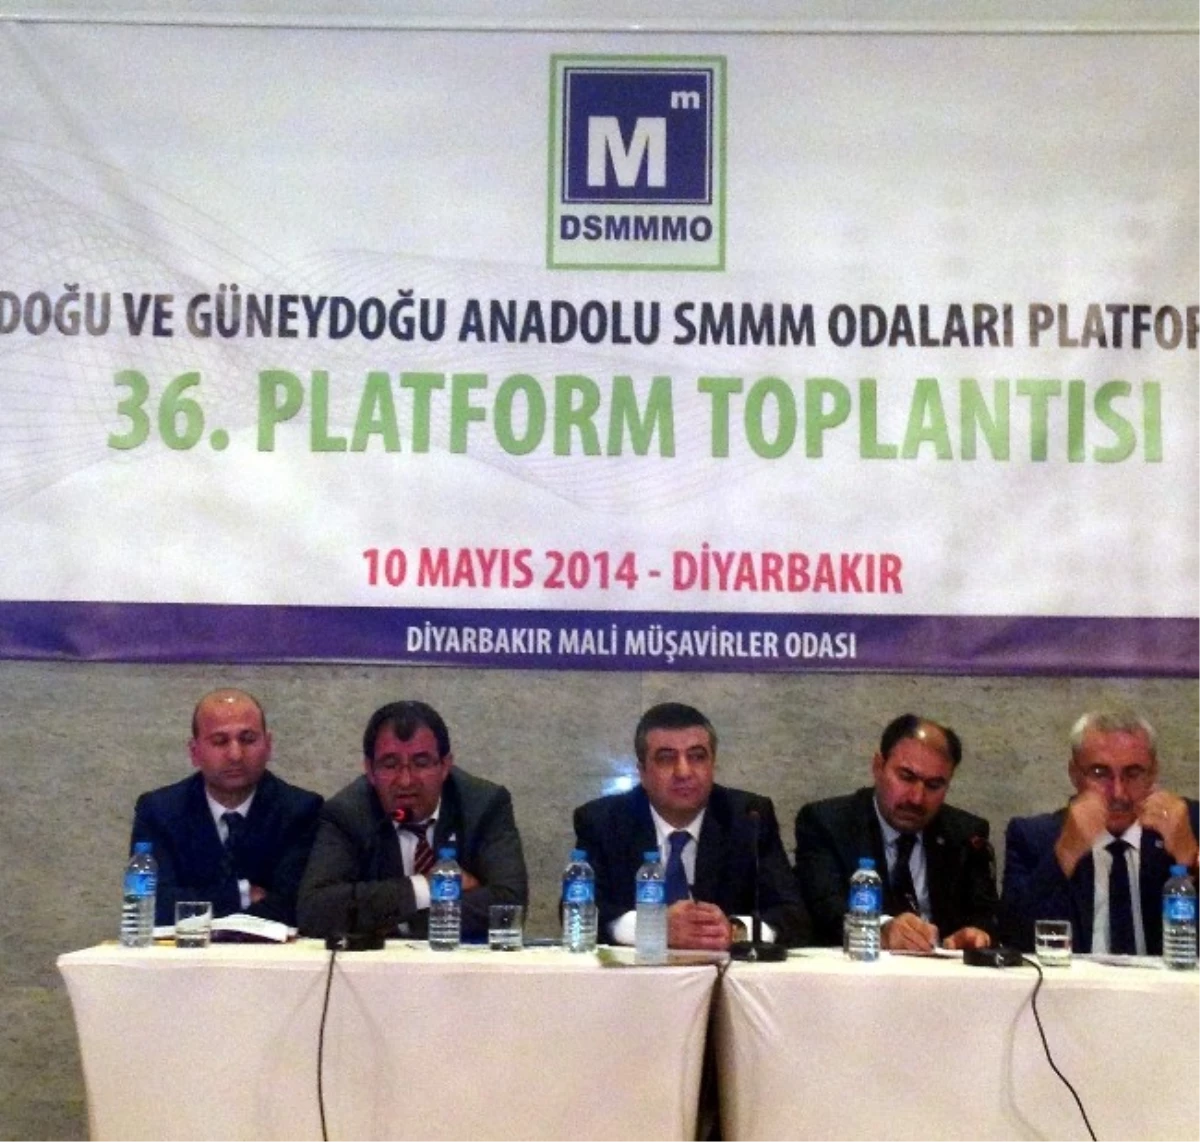 Doğu ve Güneydoğu Anadolu Smmm Odaları 36. Platform Toplantısı